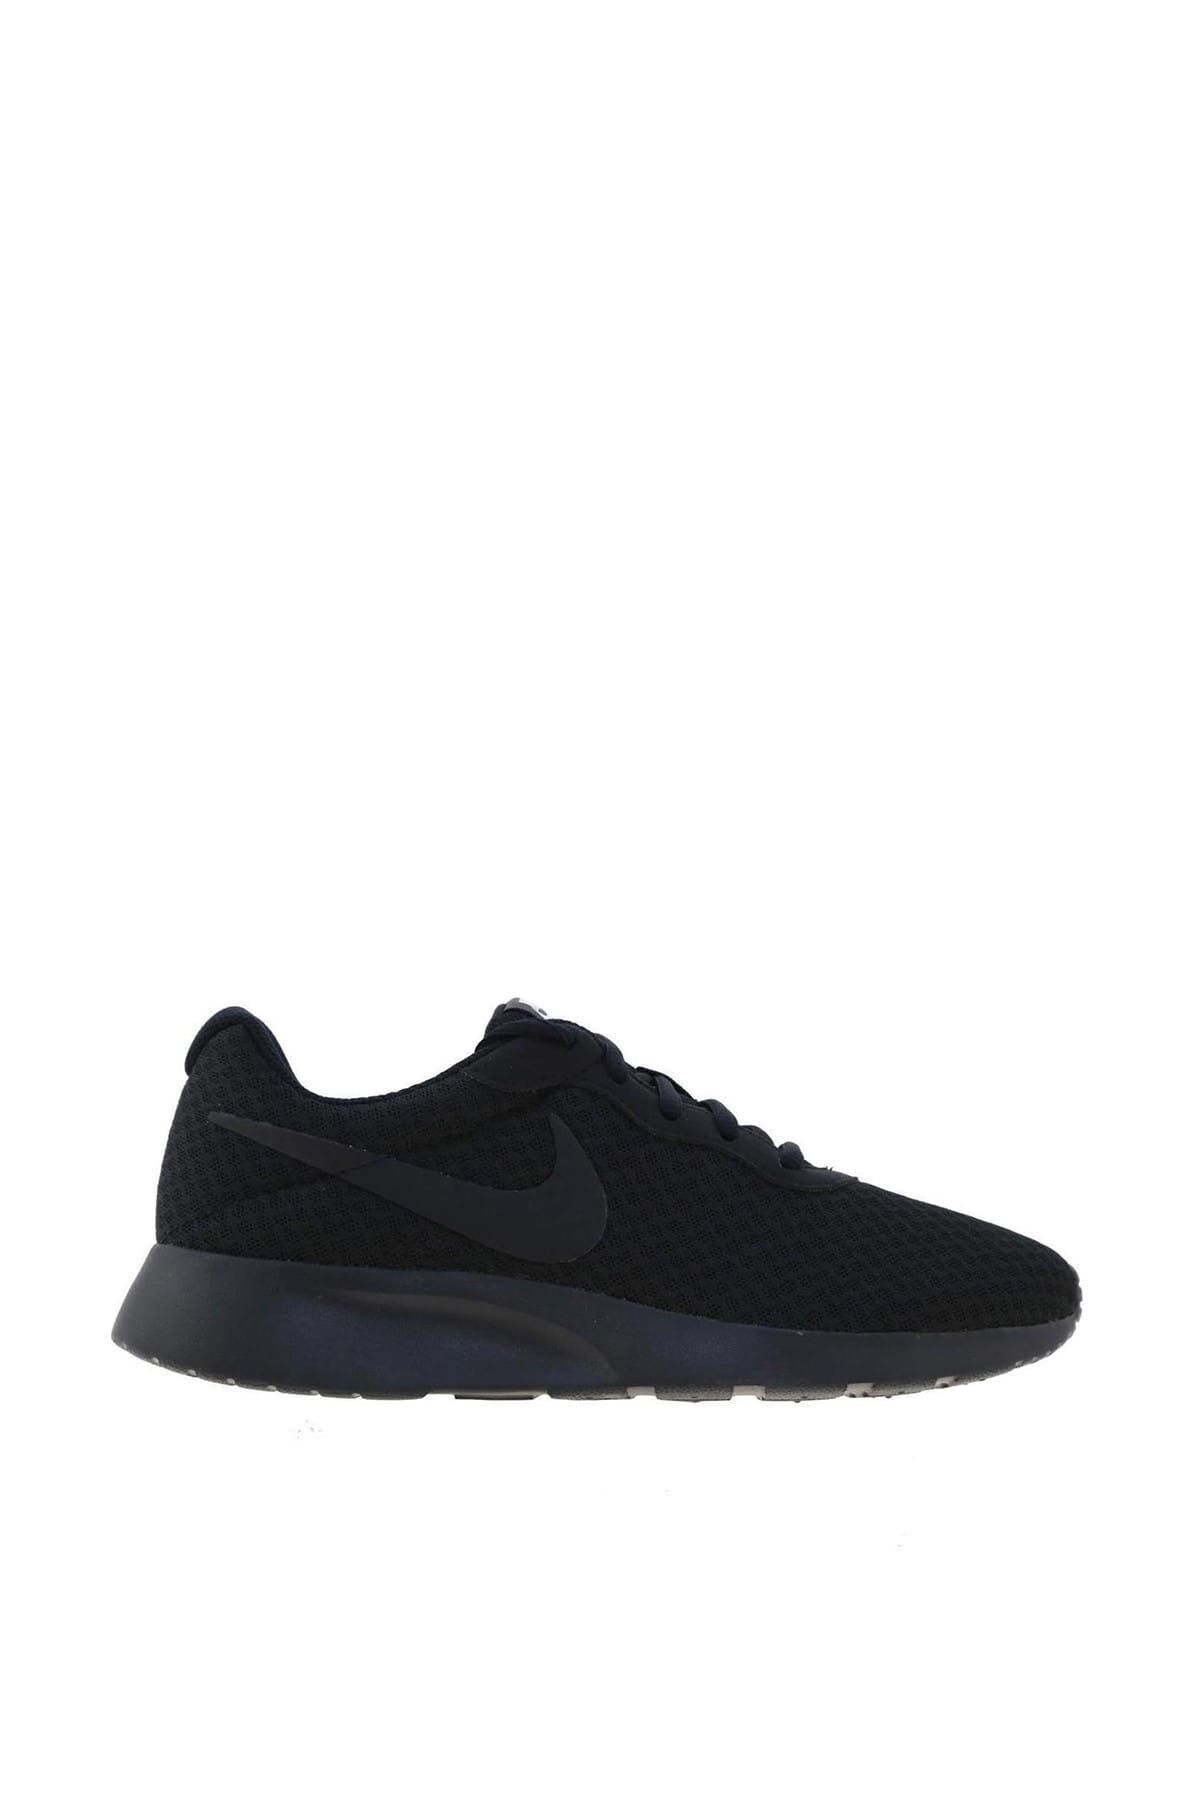 Nike Tanjun Kadın Siyah  Spor Ayakkabısı - 812655-002